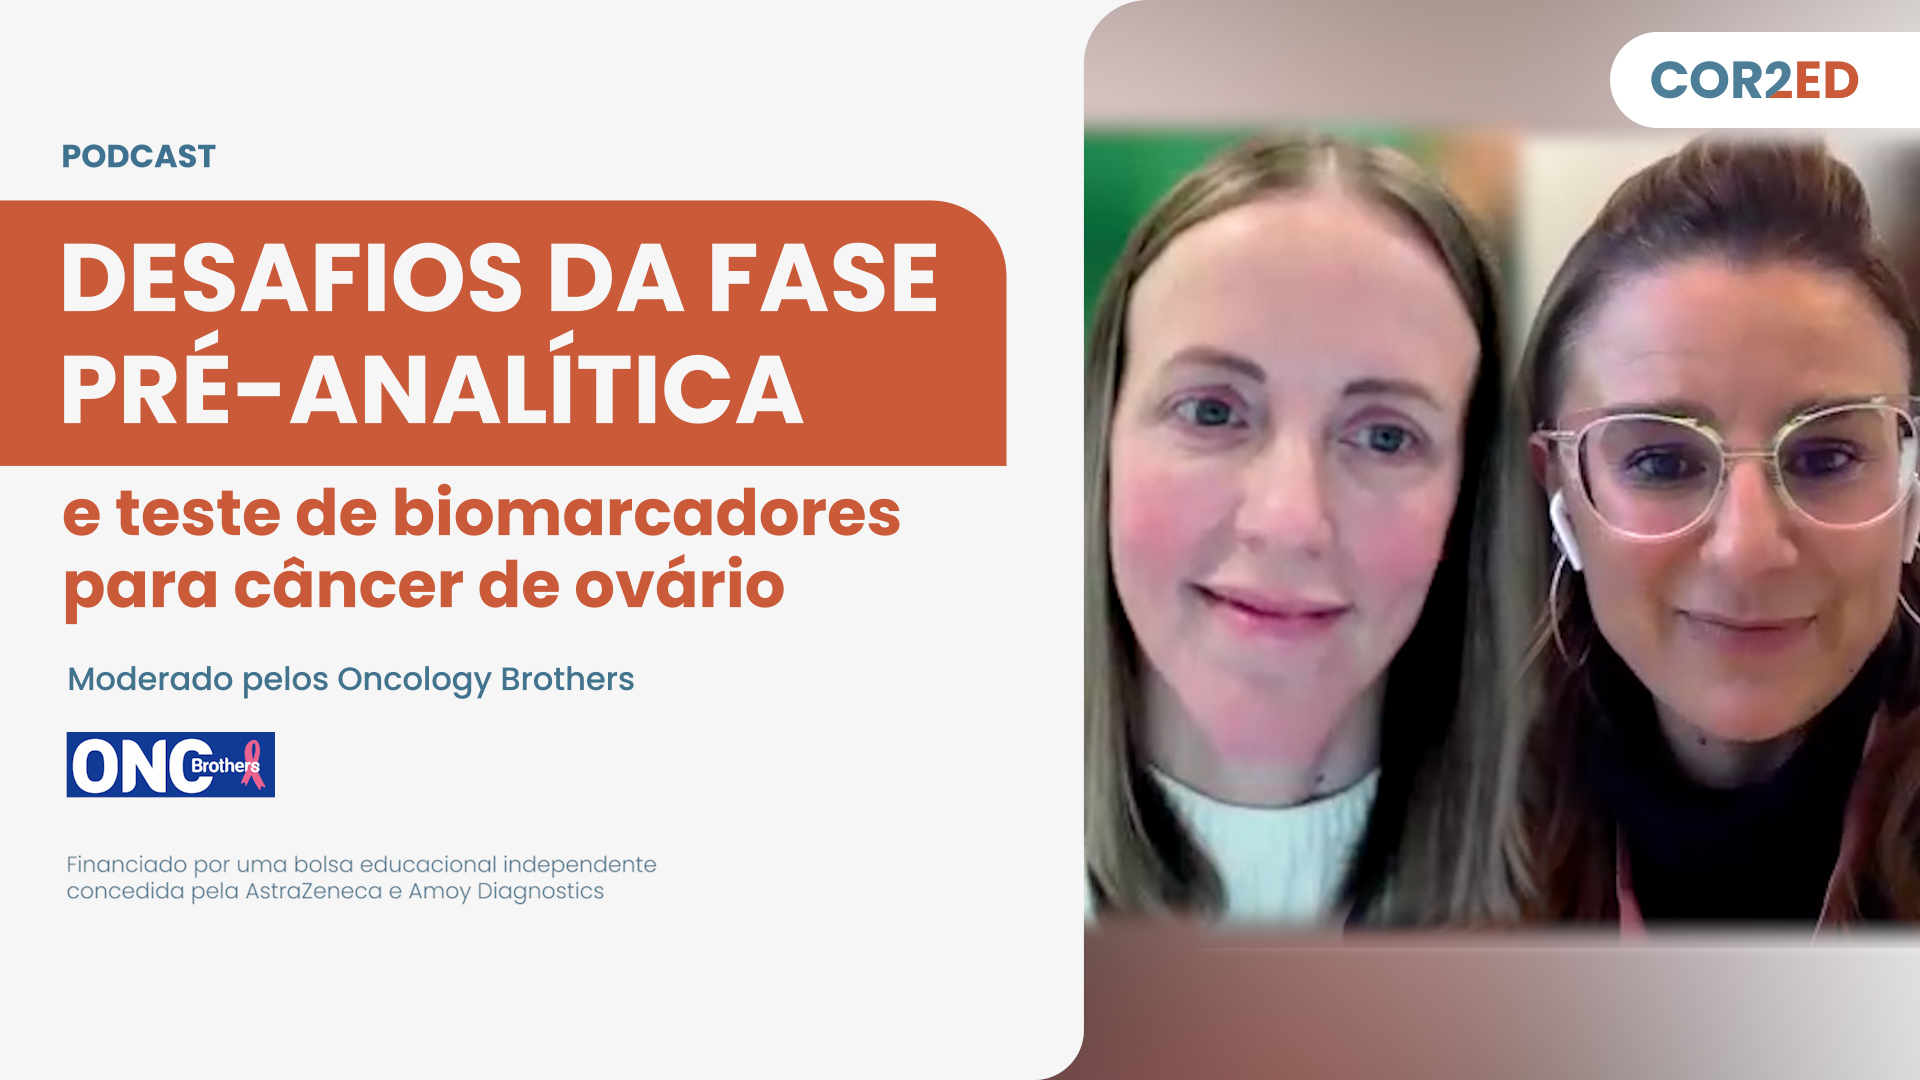 Câncer de Ovário: Desafios da fase pré-analítica e teste de biomarcadores (Portuguese)